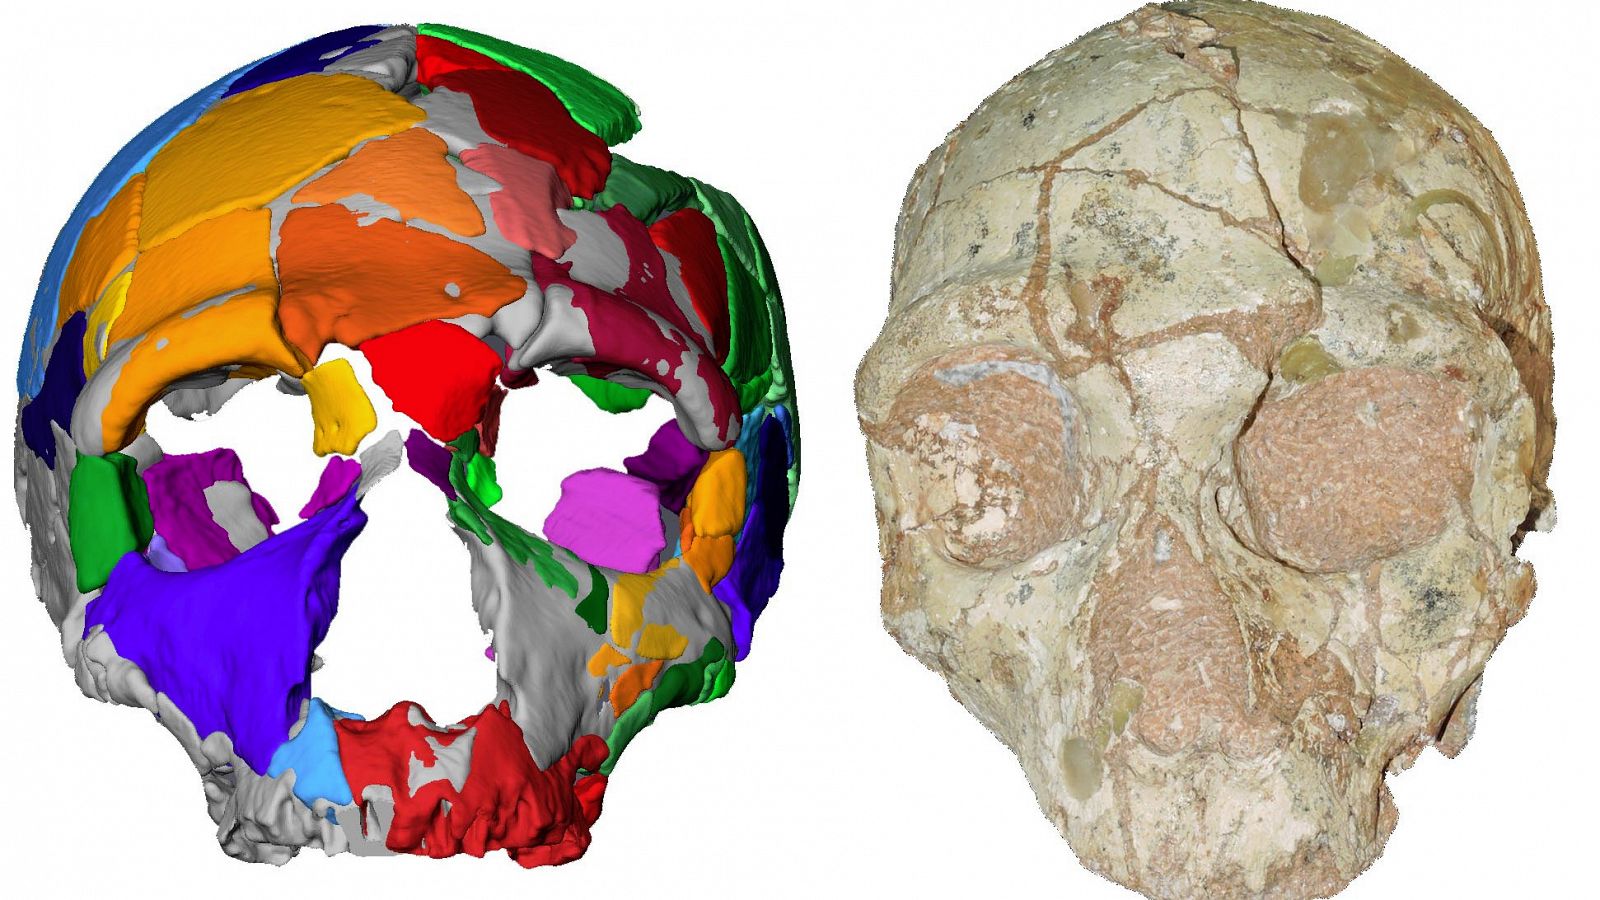 Un segundo cráneo, encontrado también en Grecia, dataría de hace 170.000 años y cuenta con rasgos de neanderthal.